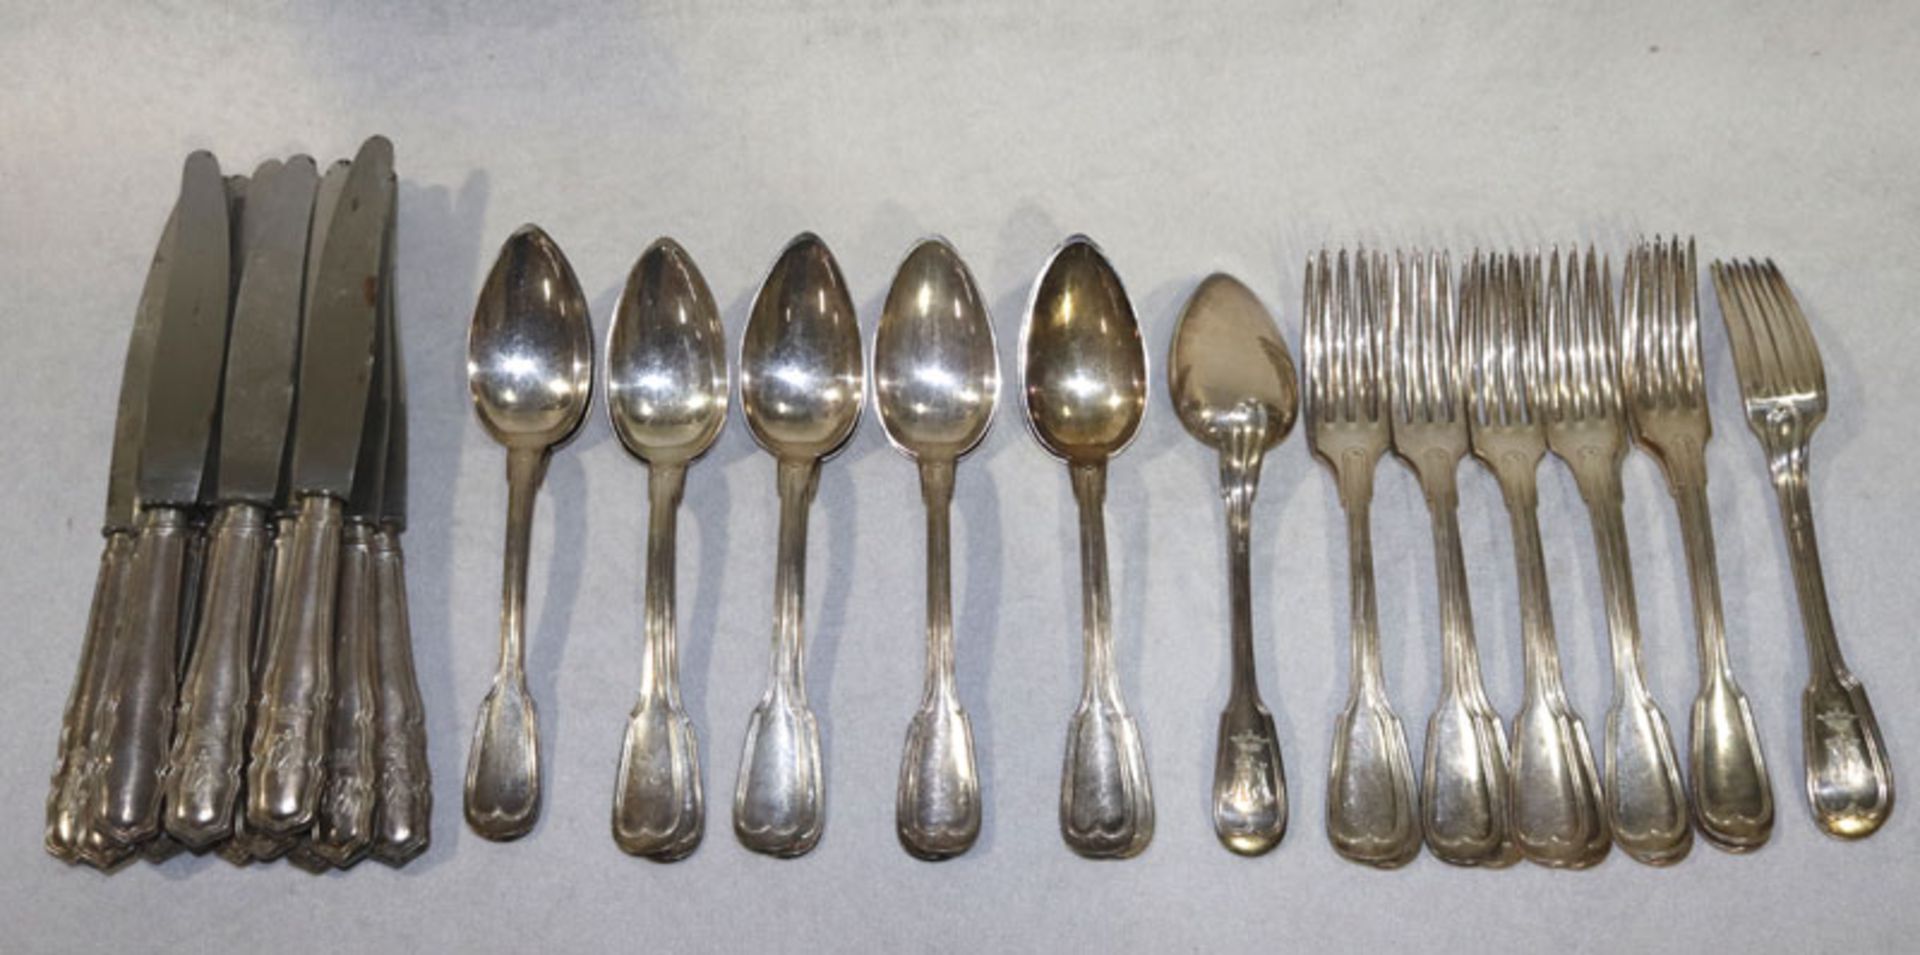 Besteck-Konvolut: 12 Menü-Gabeln und Löffel, 800 Silber, 1600 gr., und 12 Messer, 13 Lot., alle